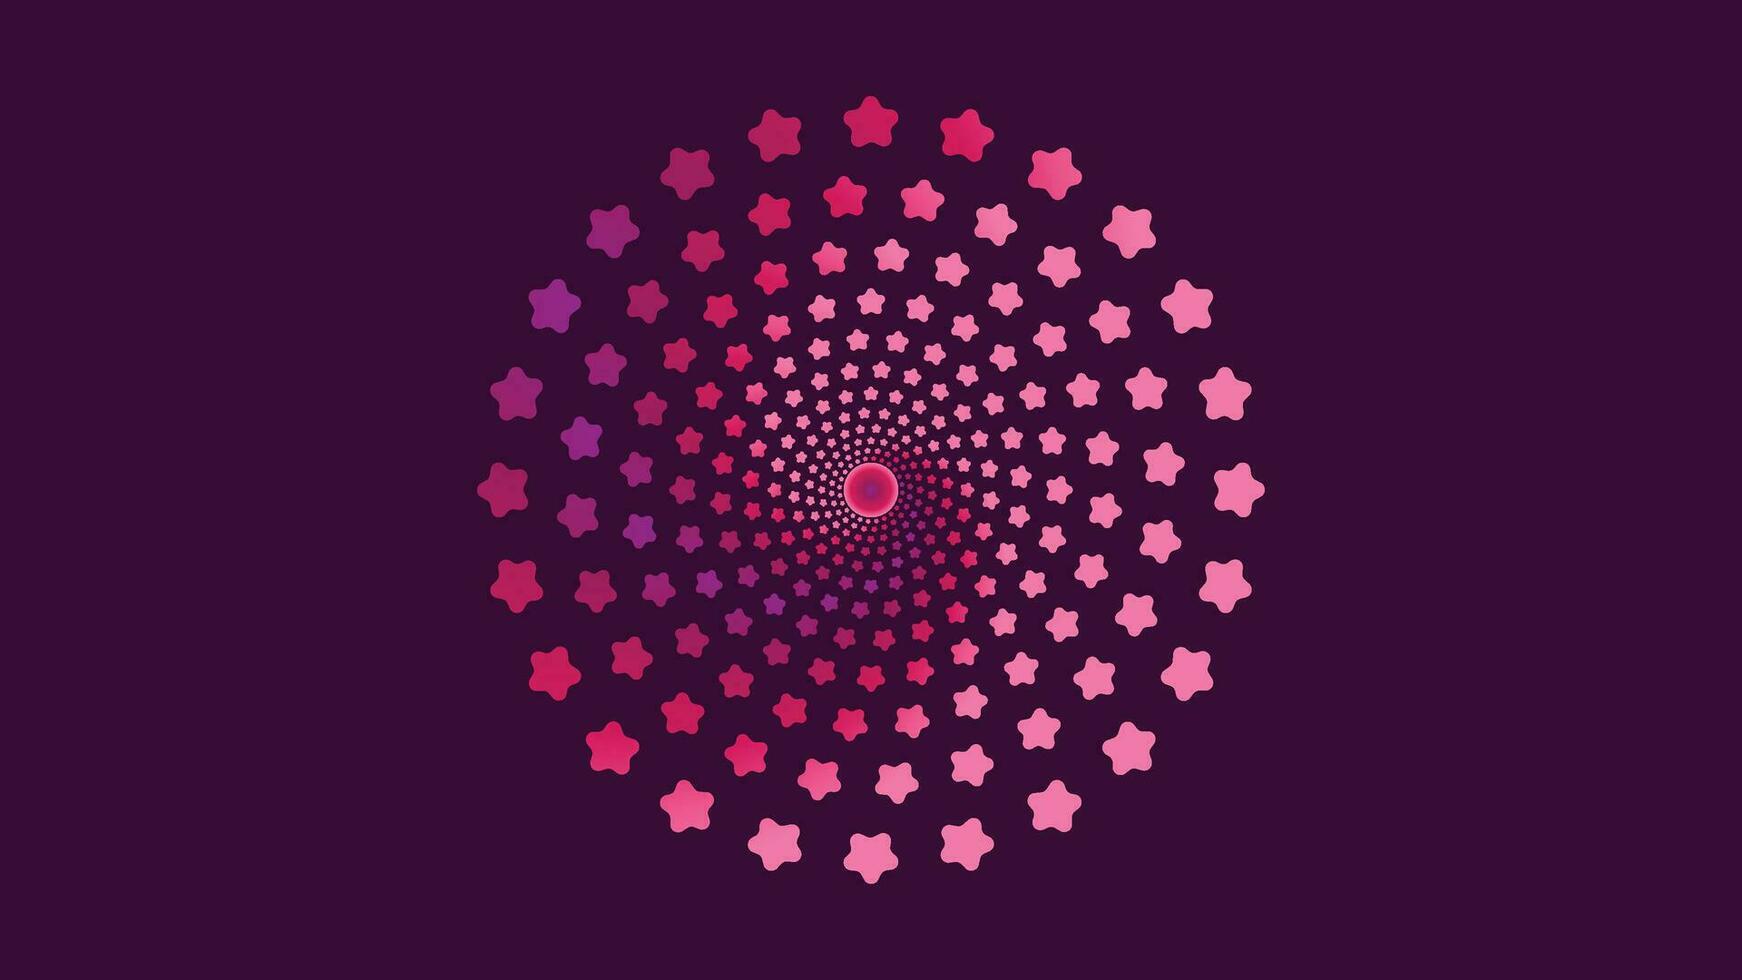 abstrato espiral nebulosa anel roxa e azul sombra fundo para seu criativo fundo. isto simples arte vai faço seu projeto Mais criativo e interessante. vetor